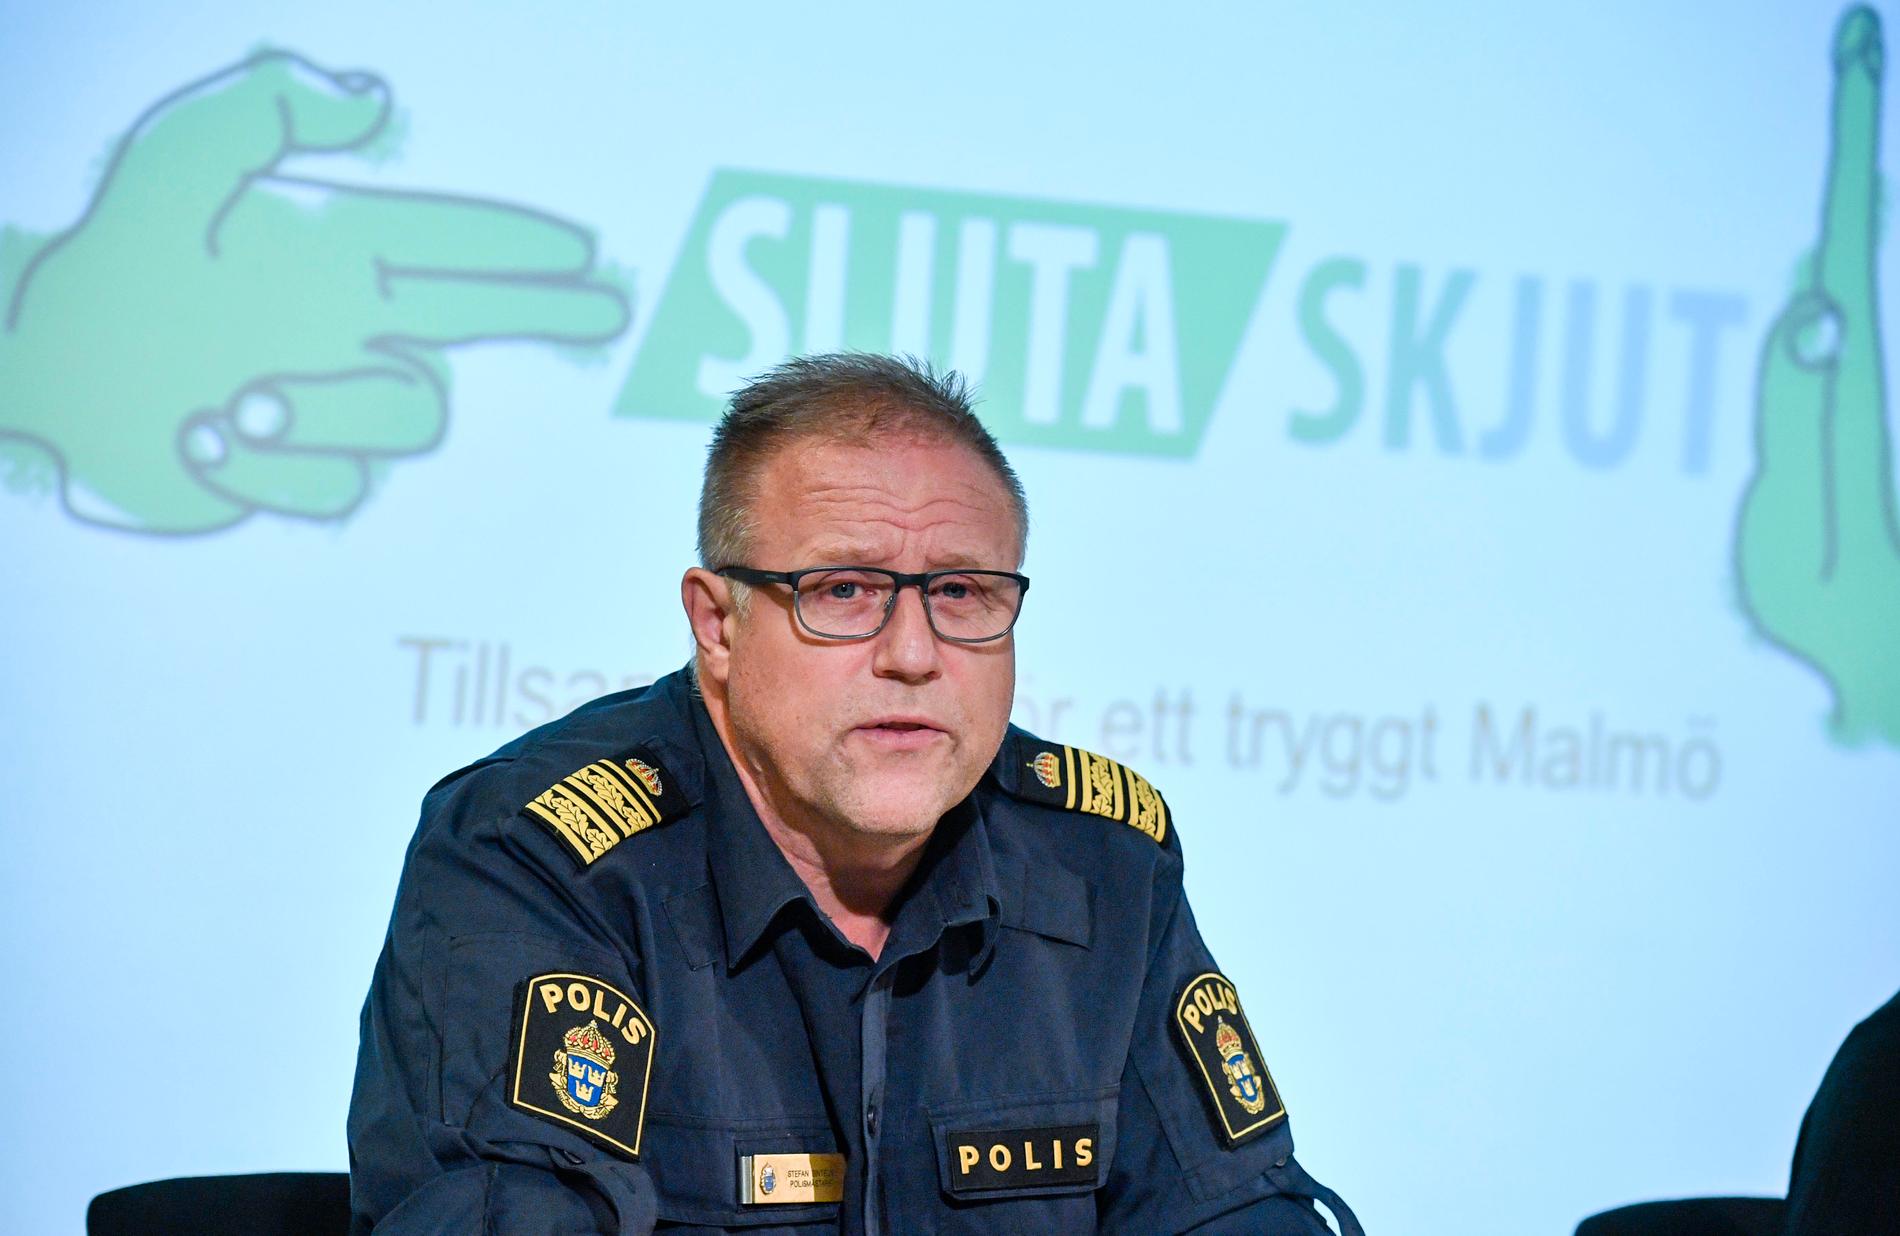 Polisområdeschef Stefan Sintéus vid Malmöpolisen berättar om projektet ”Sluta skjut” under en pressträff i Malmö 2018.